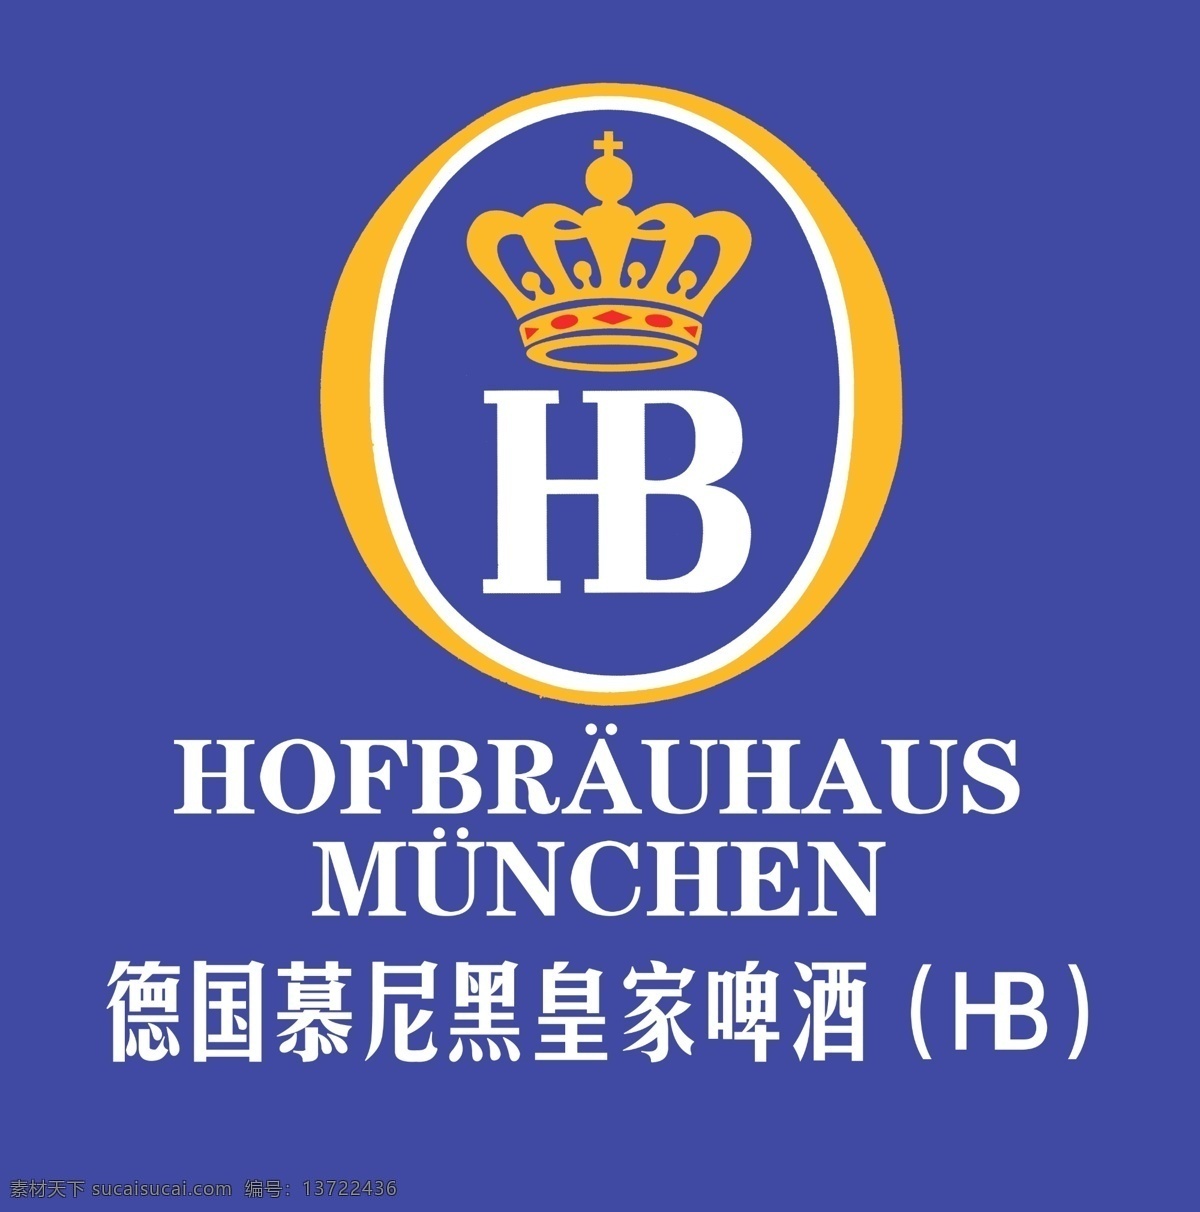 慕尼黑 皇家 啤酒 hb 德国 扎啤 标志设计 广告设计模板 源文件